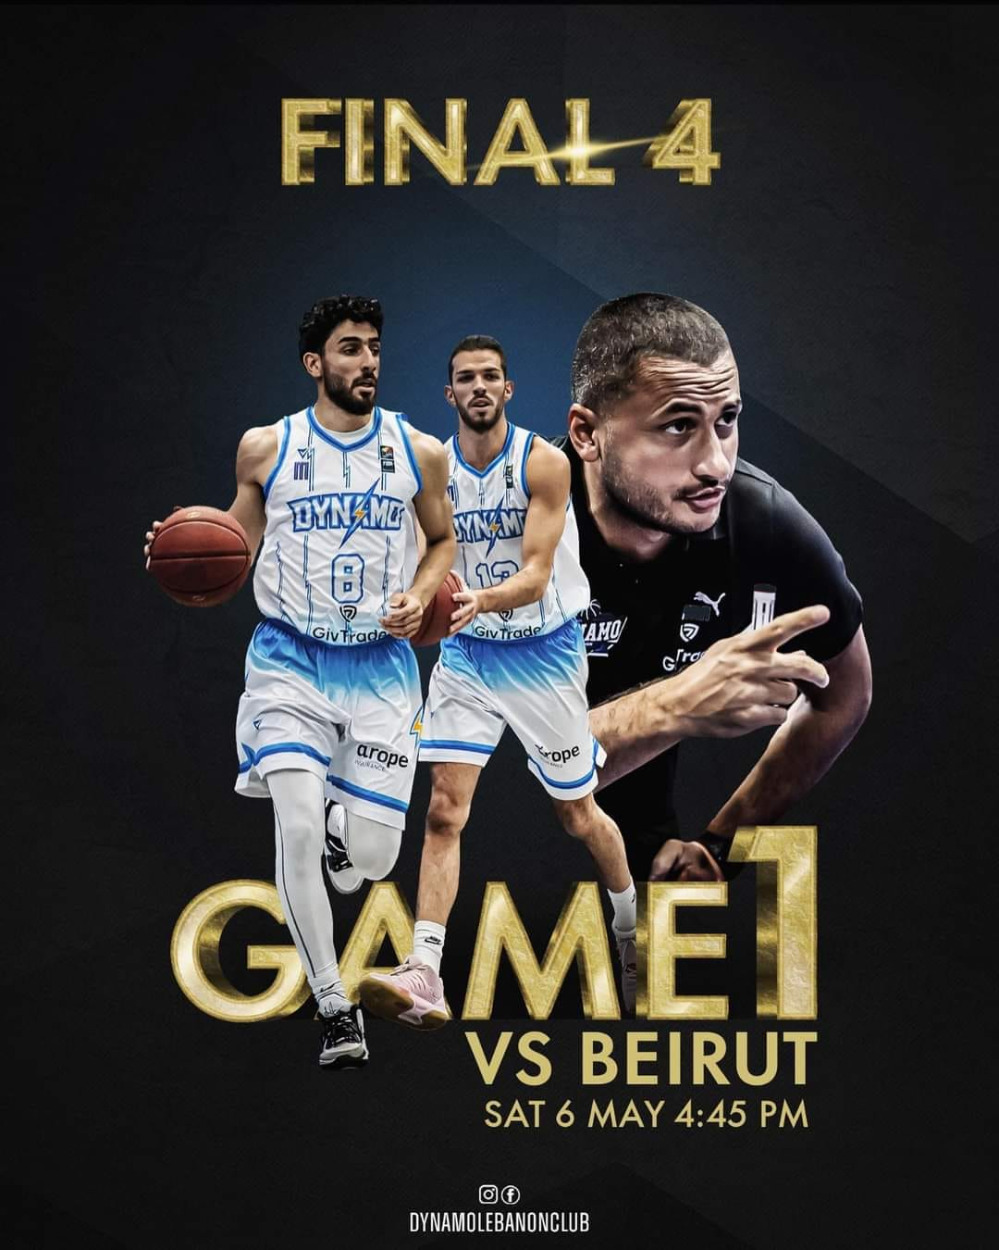 فوز دينامو و الرياضي ضمن "فاينل 4" بطولة لبنان لكرة السلة